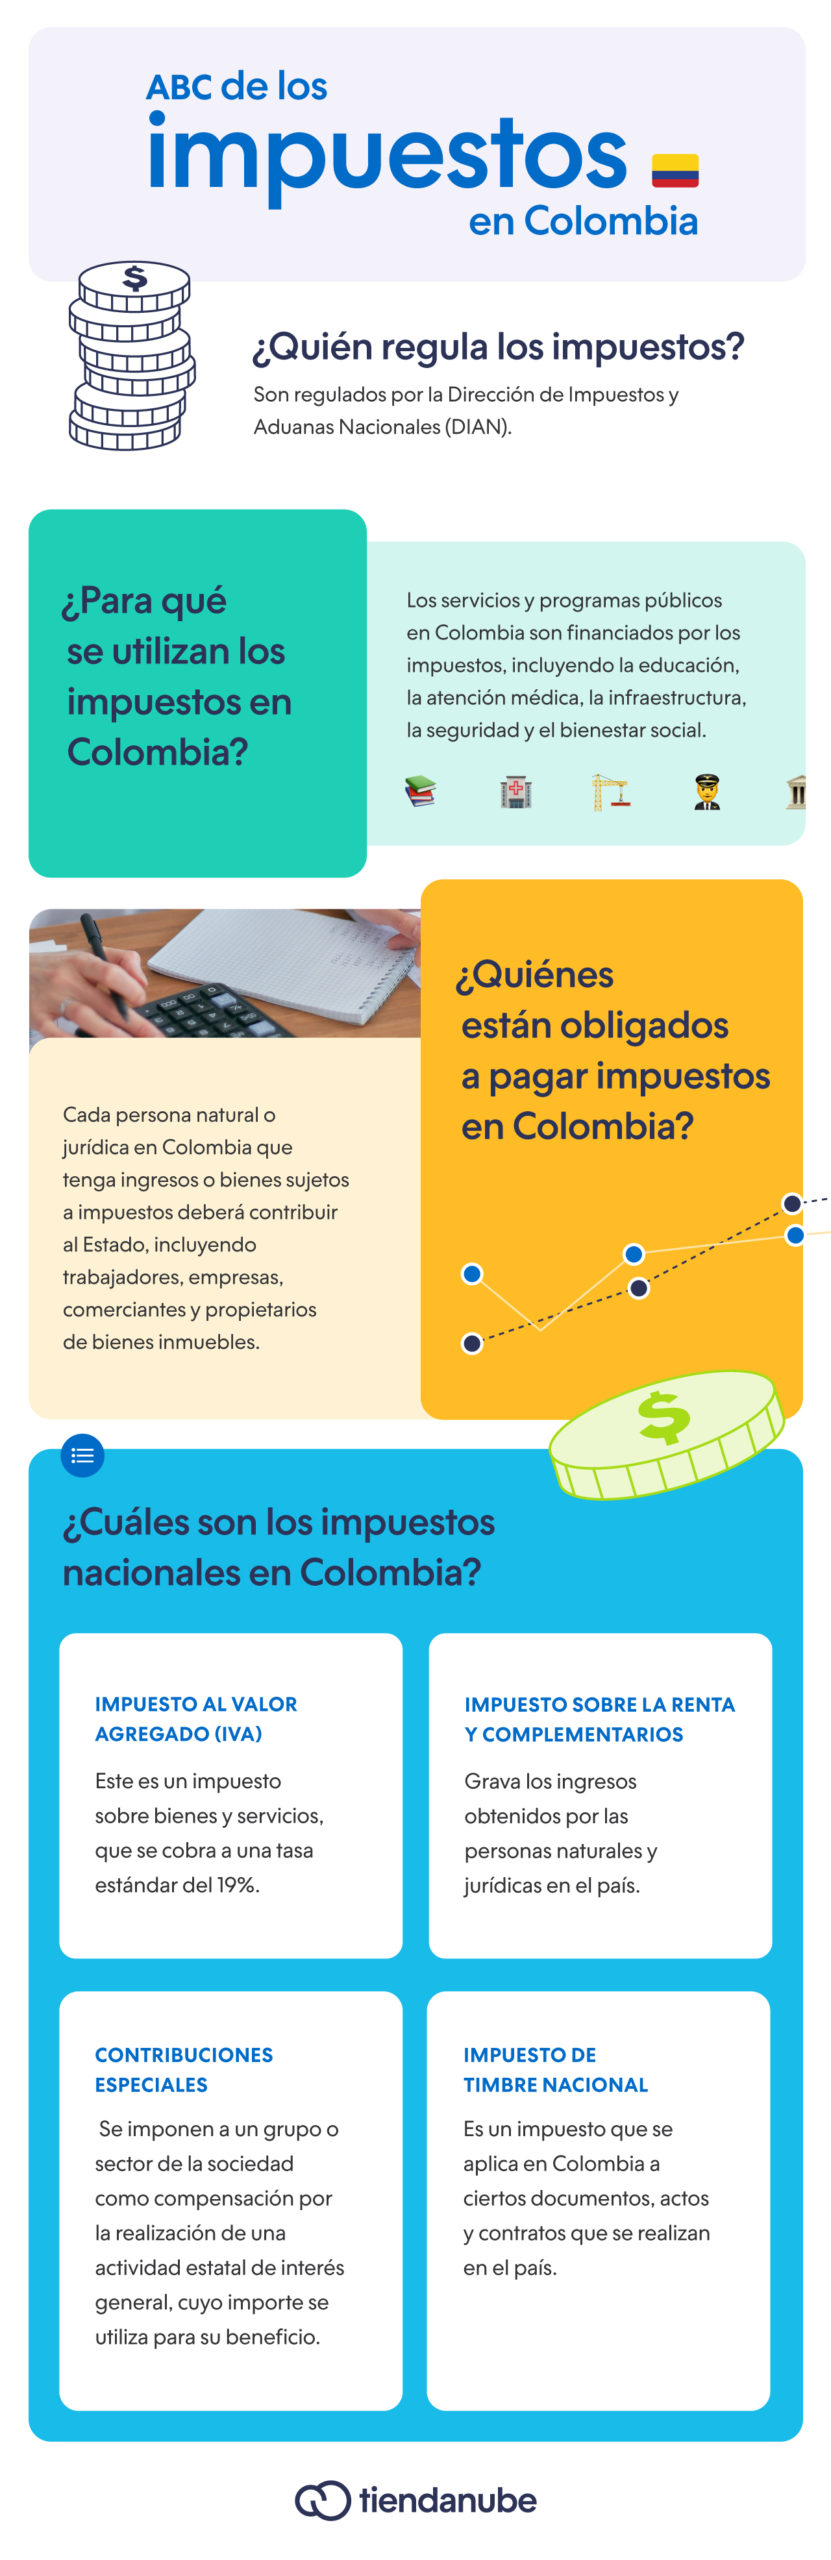 Infografía sobre ABC de los impuestos en colombia